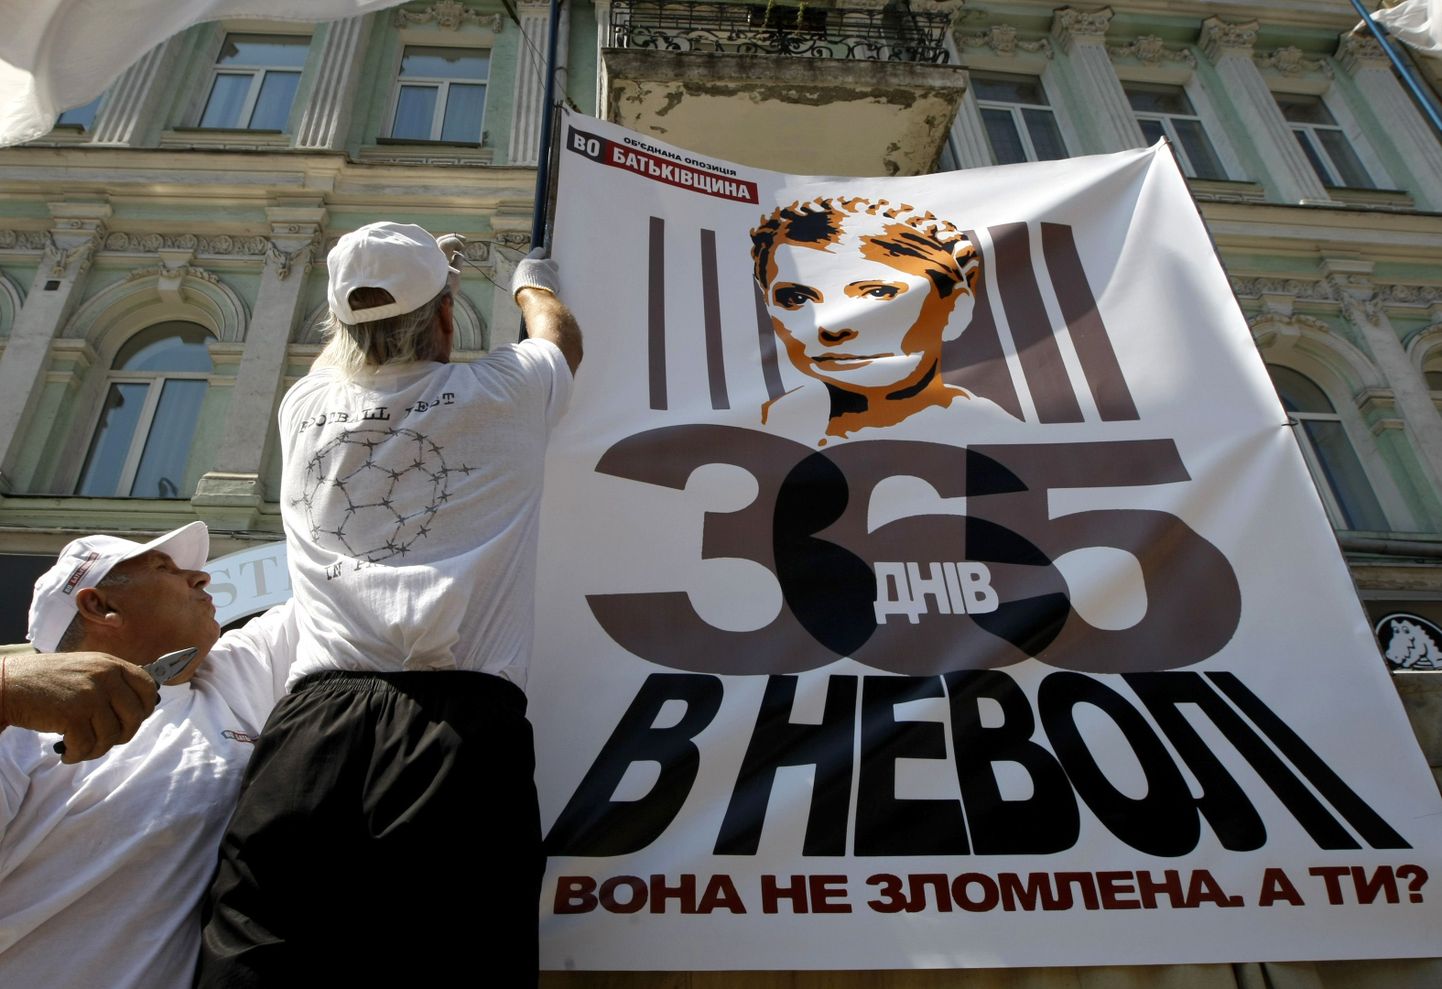 Tõmošenko toetajad Kiievi kesklinnas asuvas telklaagris naist kujutavat plakatit üles panemas.